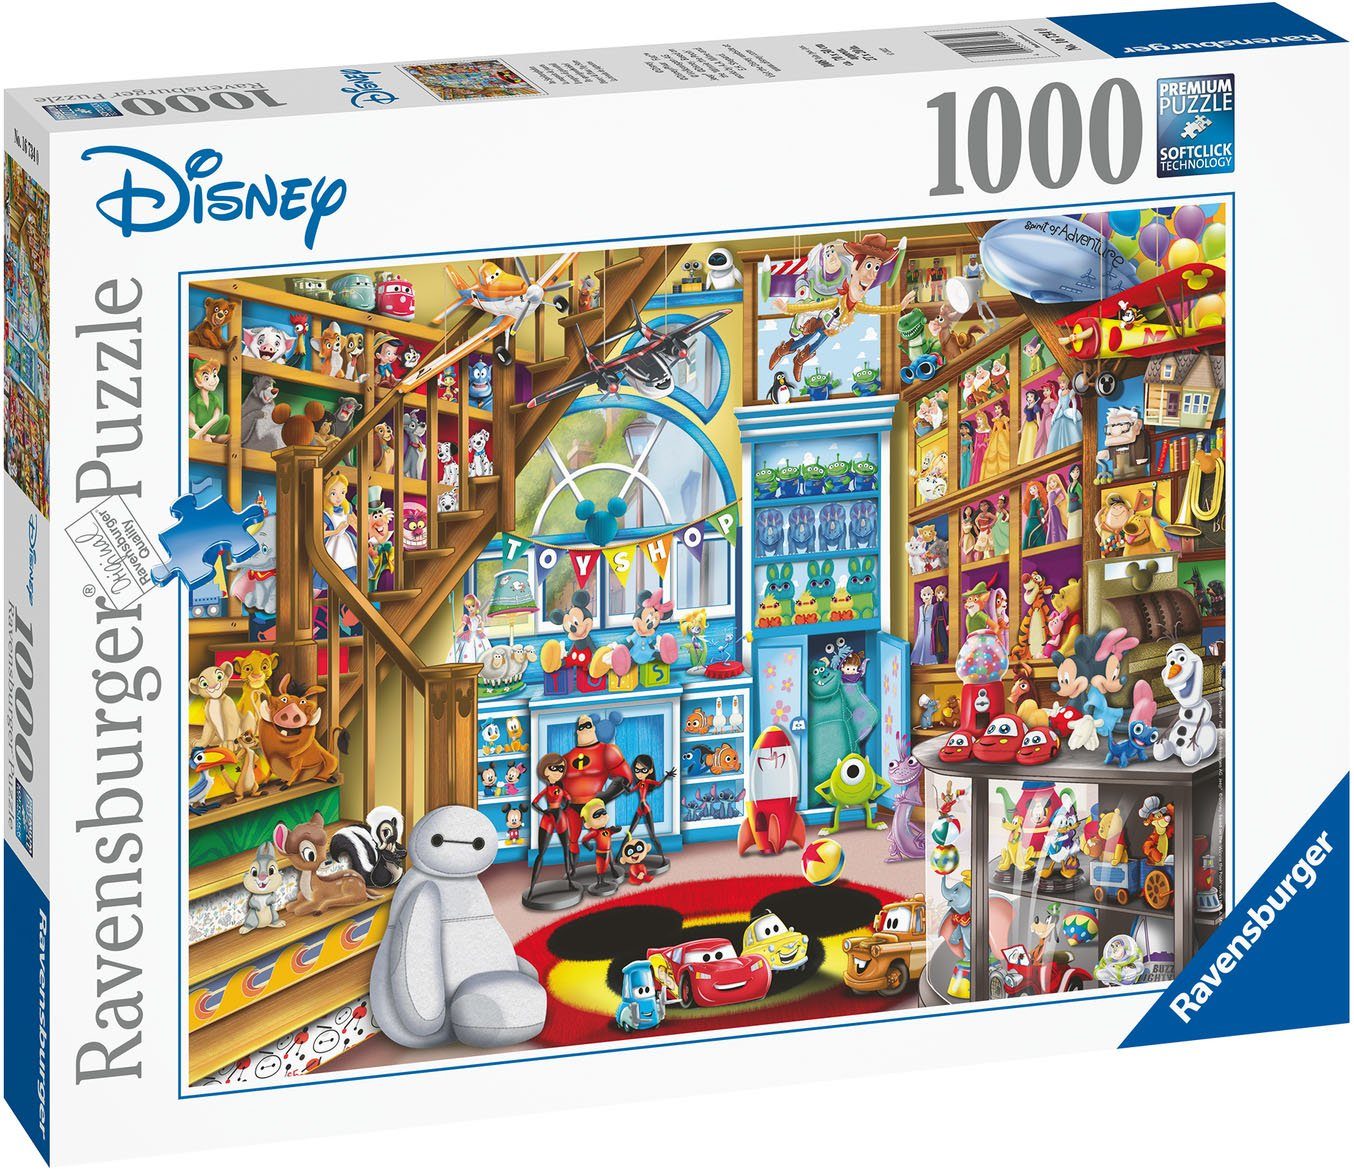 1000 Spielzeugladen, Made schützt Ravensburger FSC® Puzzle - weltweit; Germany in Puzzleteile, Wald - Im